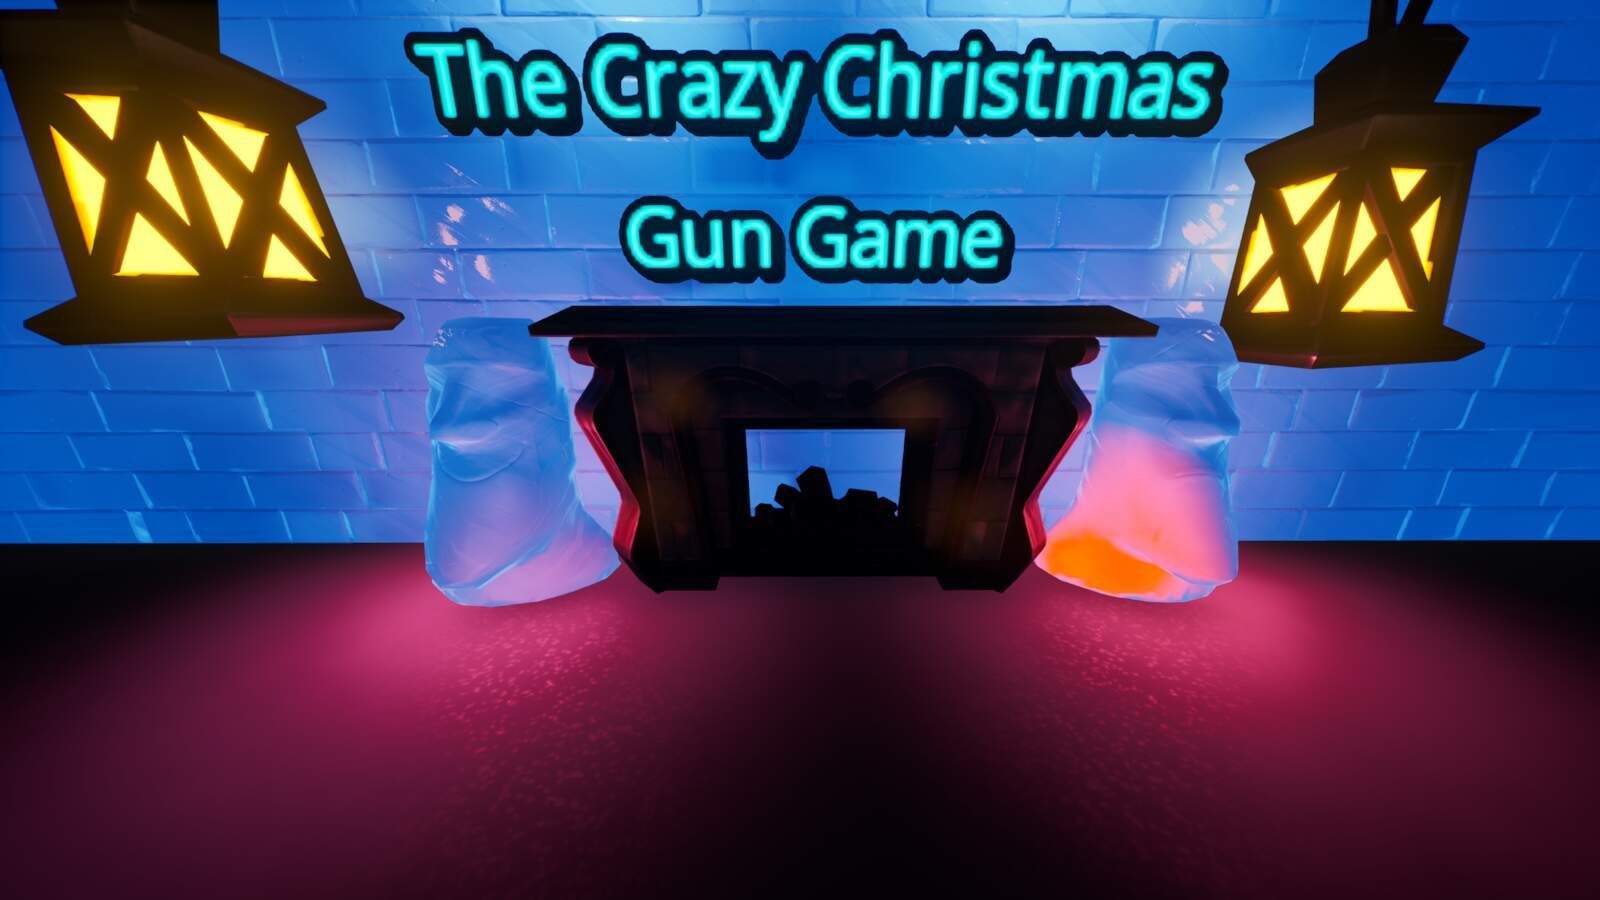 THE CRAZY CHRISTMAS GUN GAME